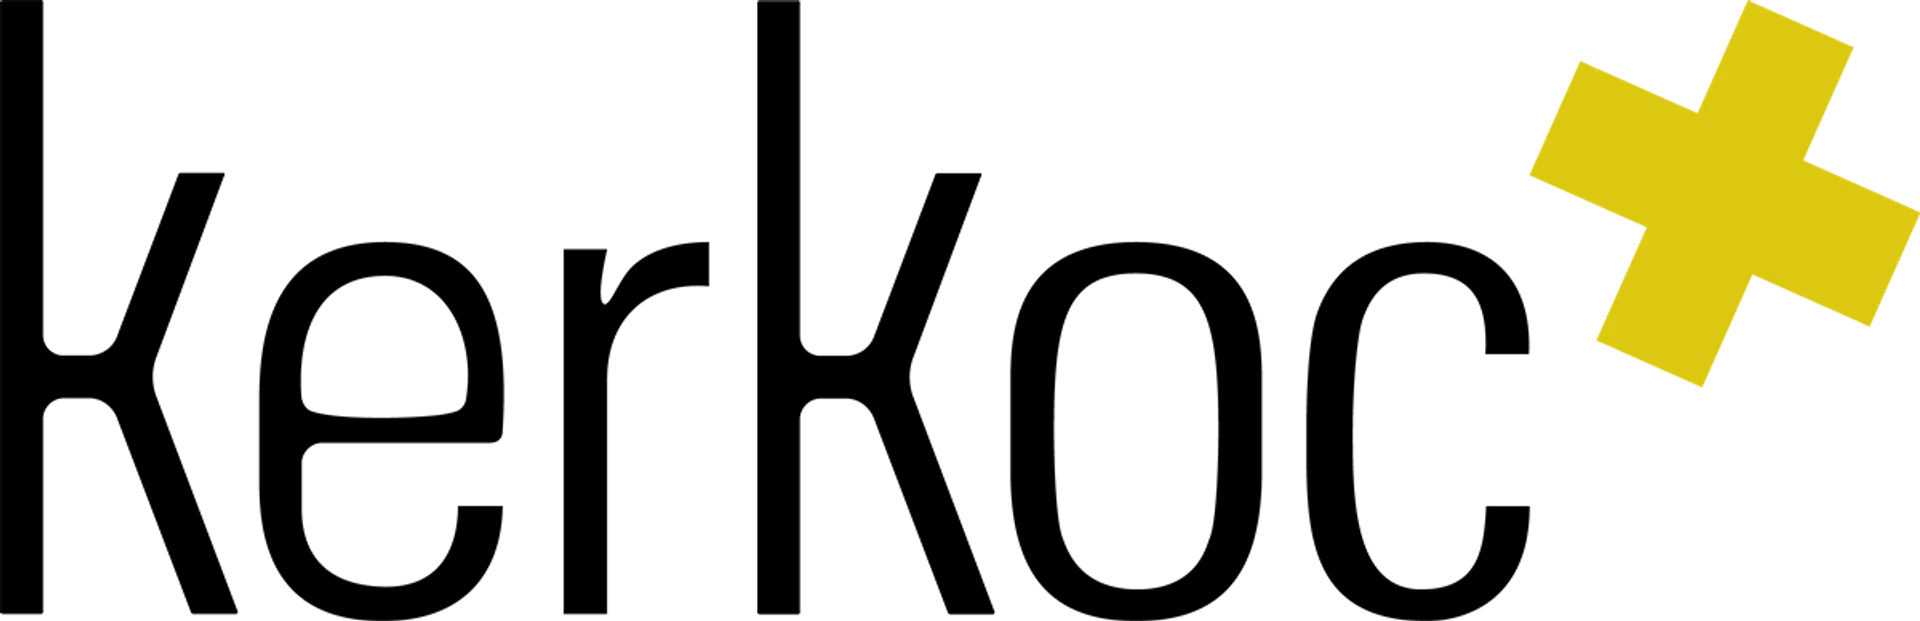 KERKOC logo die aktuell Flugblatt